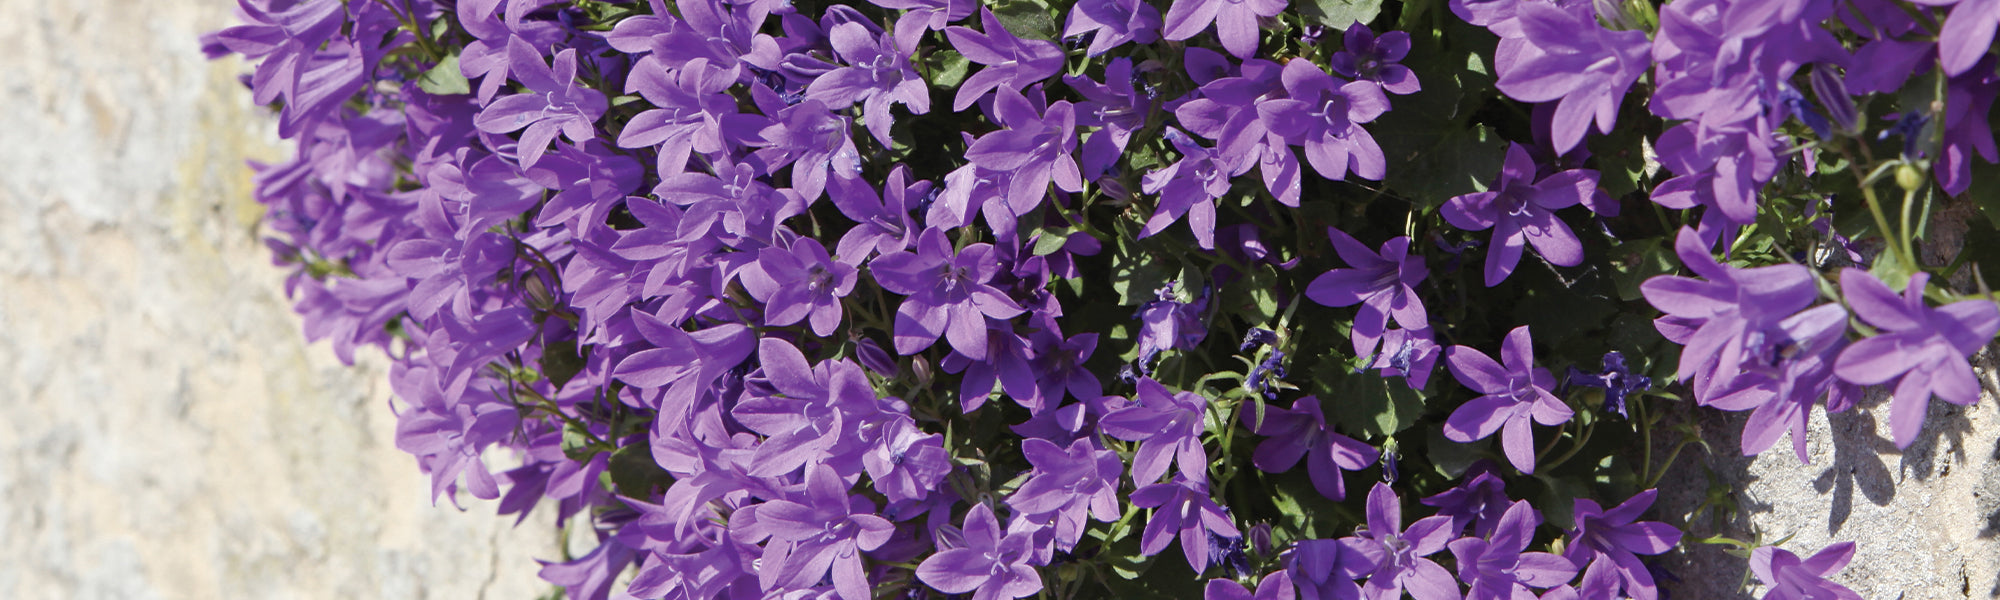 Plantes de couleur violette